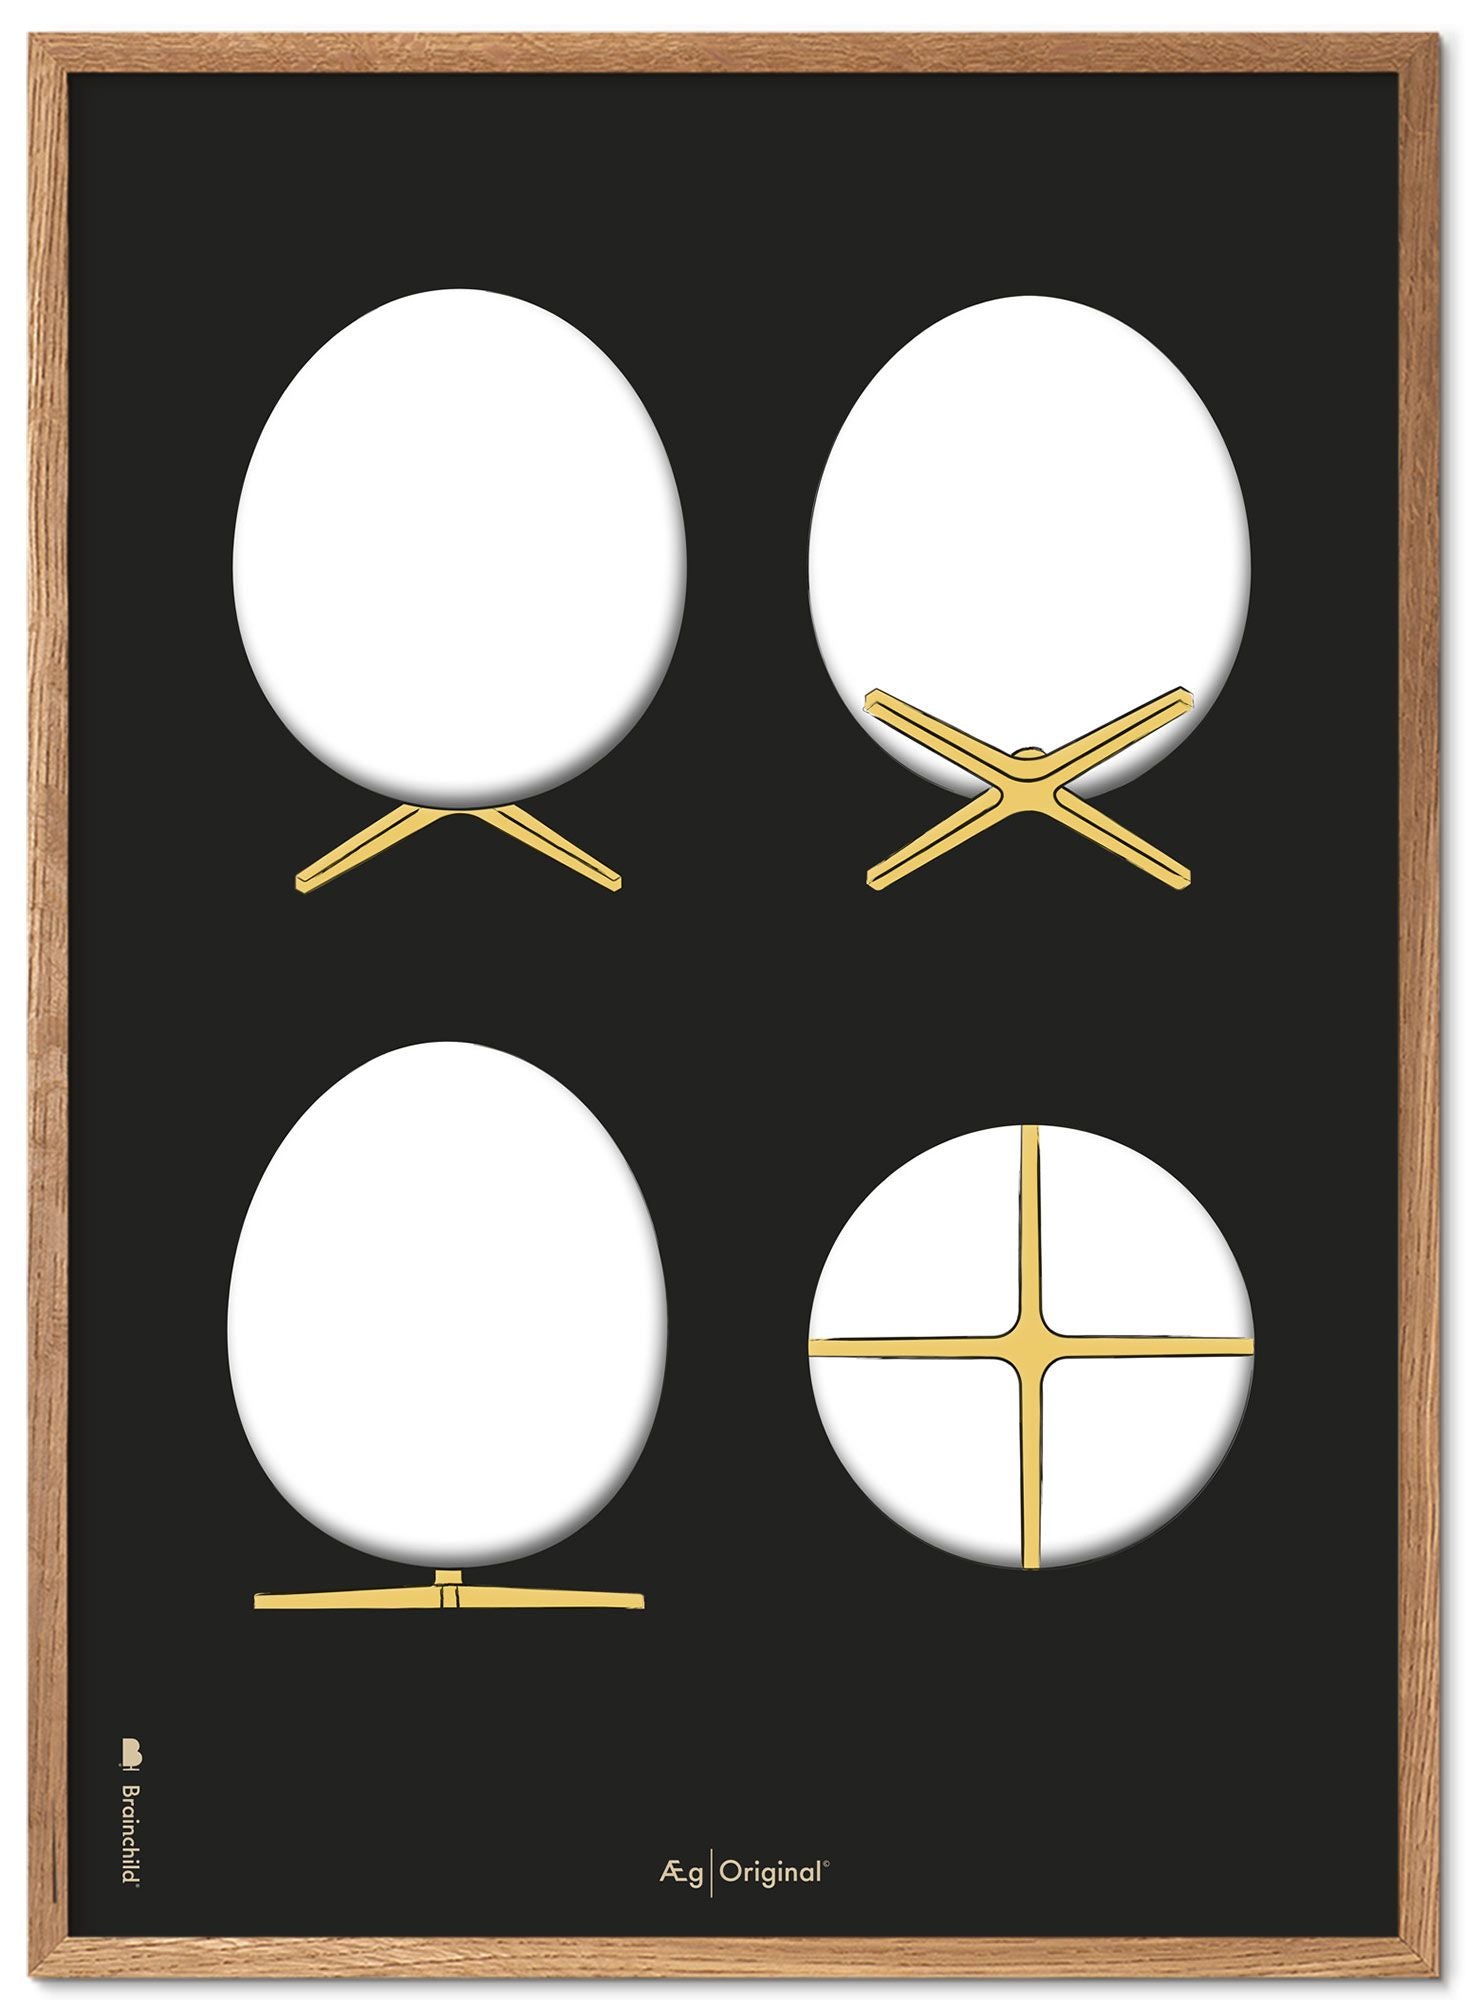 Brainchild the Egg Design Sketches Poster Frame in legno chiaro A5, sfondo nero